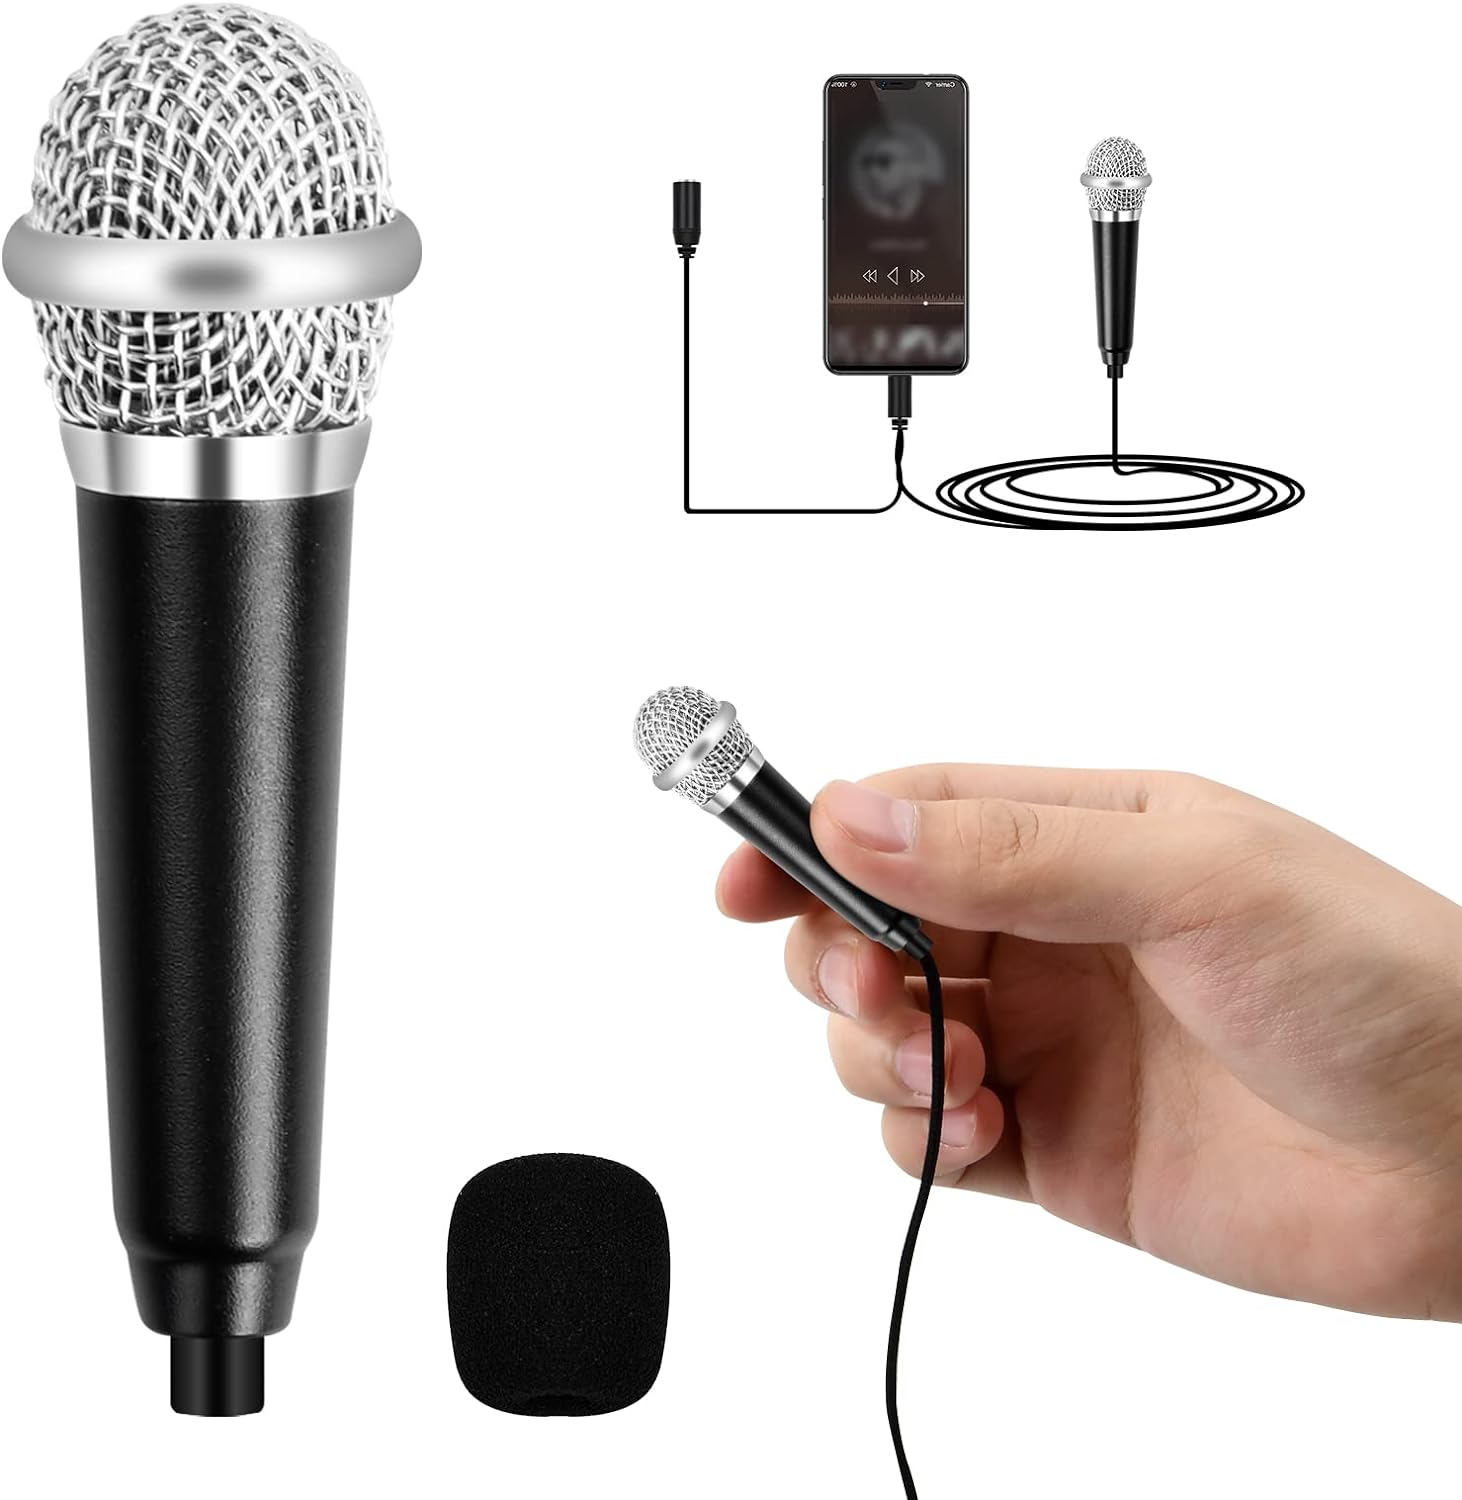 Μίνι μικρόφωνο καραόκε, φορητό φωνητικό μικρόφωνο με καλώδιο γενικής χρήσης 3,5 mm, μίνι φορητό μικρόφωνο χειρός μεταλλικό ενσύρματο για φορητούς υπολογιστές κινητών τηλεφώνων